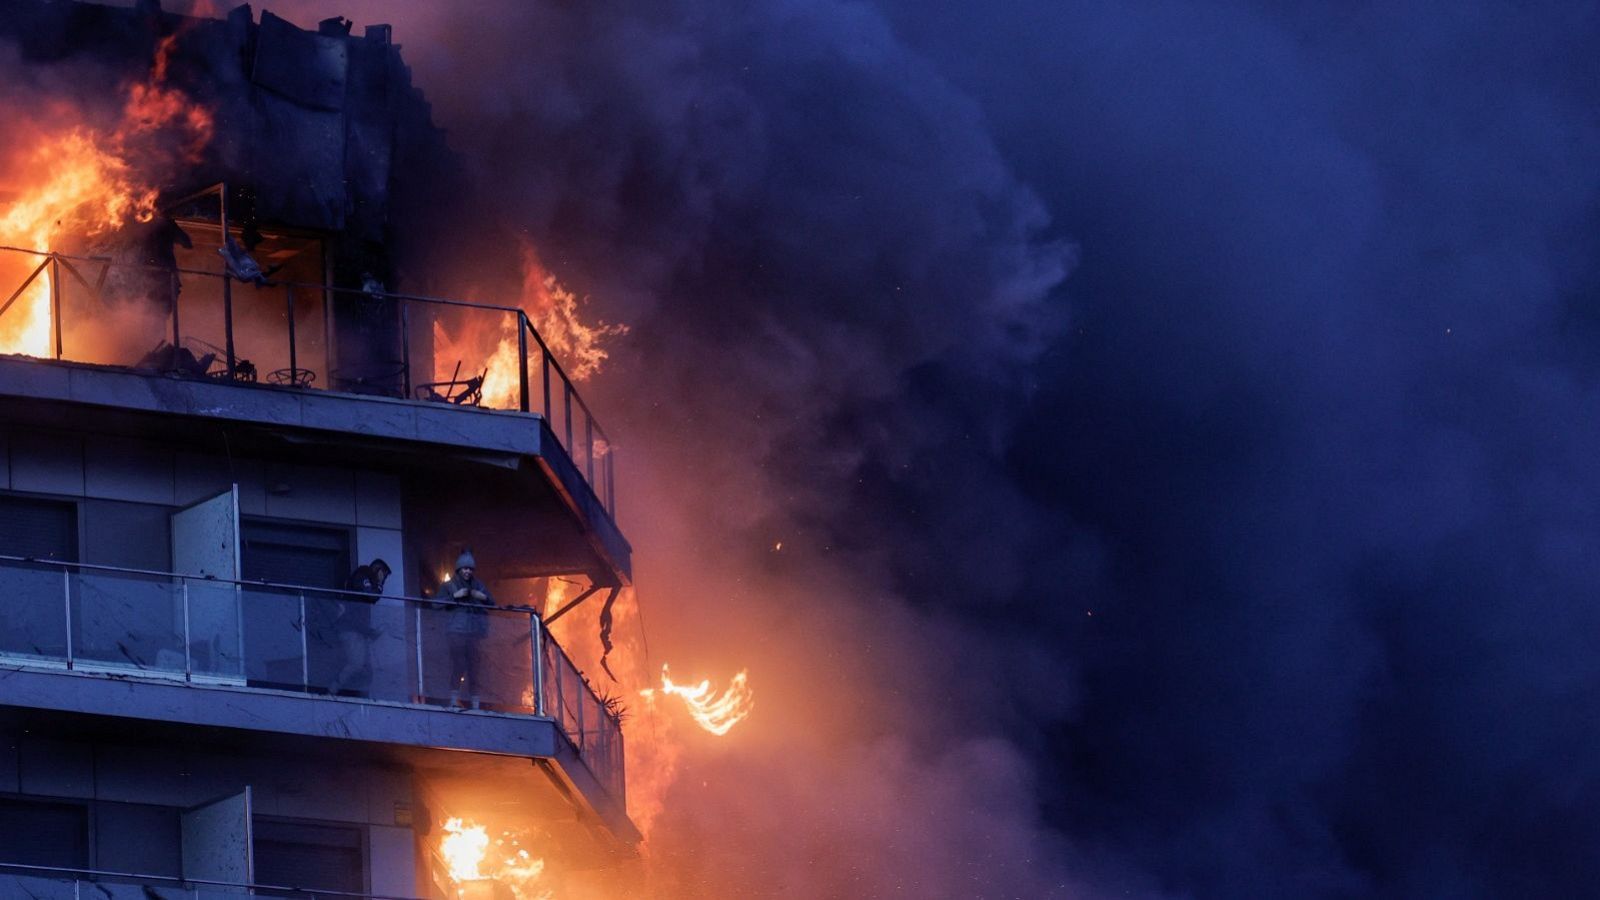 Incendio Valencia | "Las llamas se han extendido a una velocidad brutal hacia la otra parte del edificio"